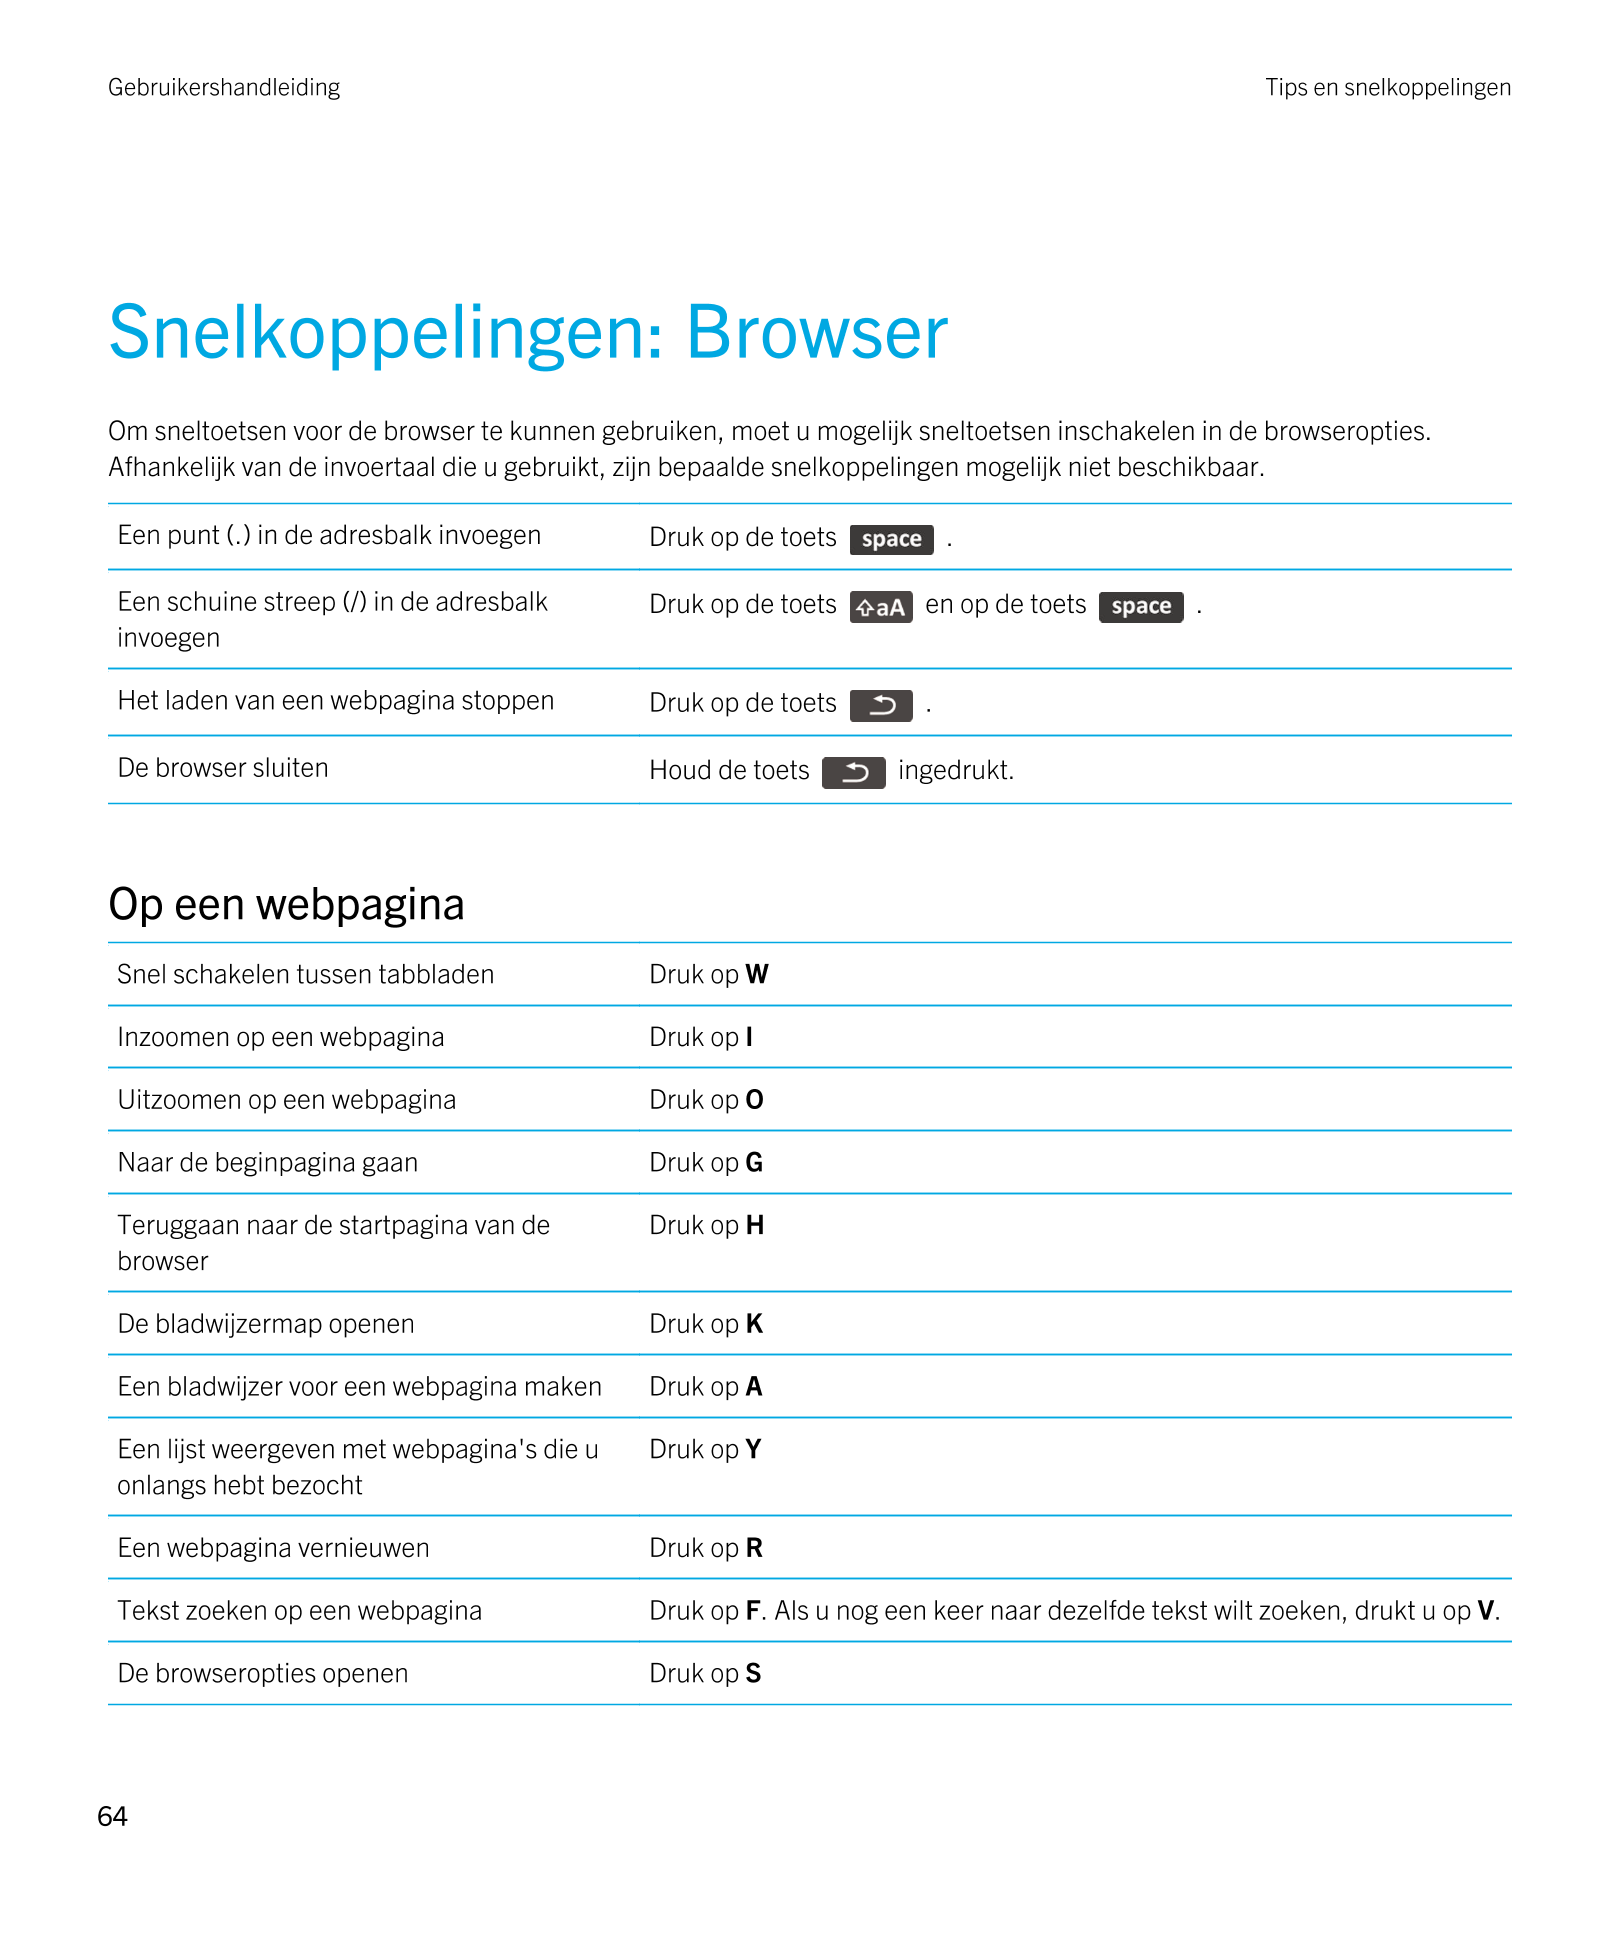 Gebruikershandleiding Tips en snelkoppelingen
Snelkoppelingen: Browser
Om sneltoetsen voor de browser te kunnen gebruiken, moet 